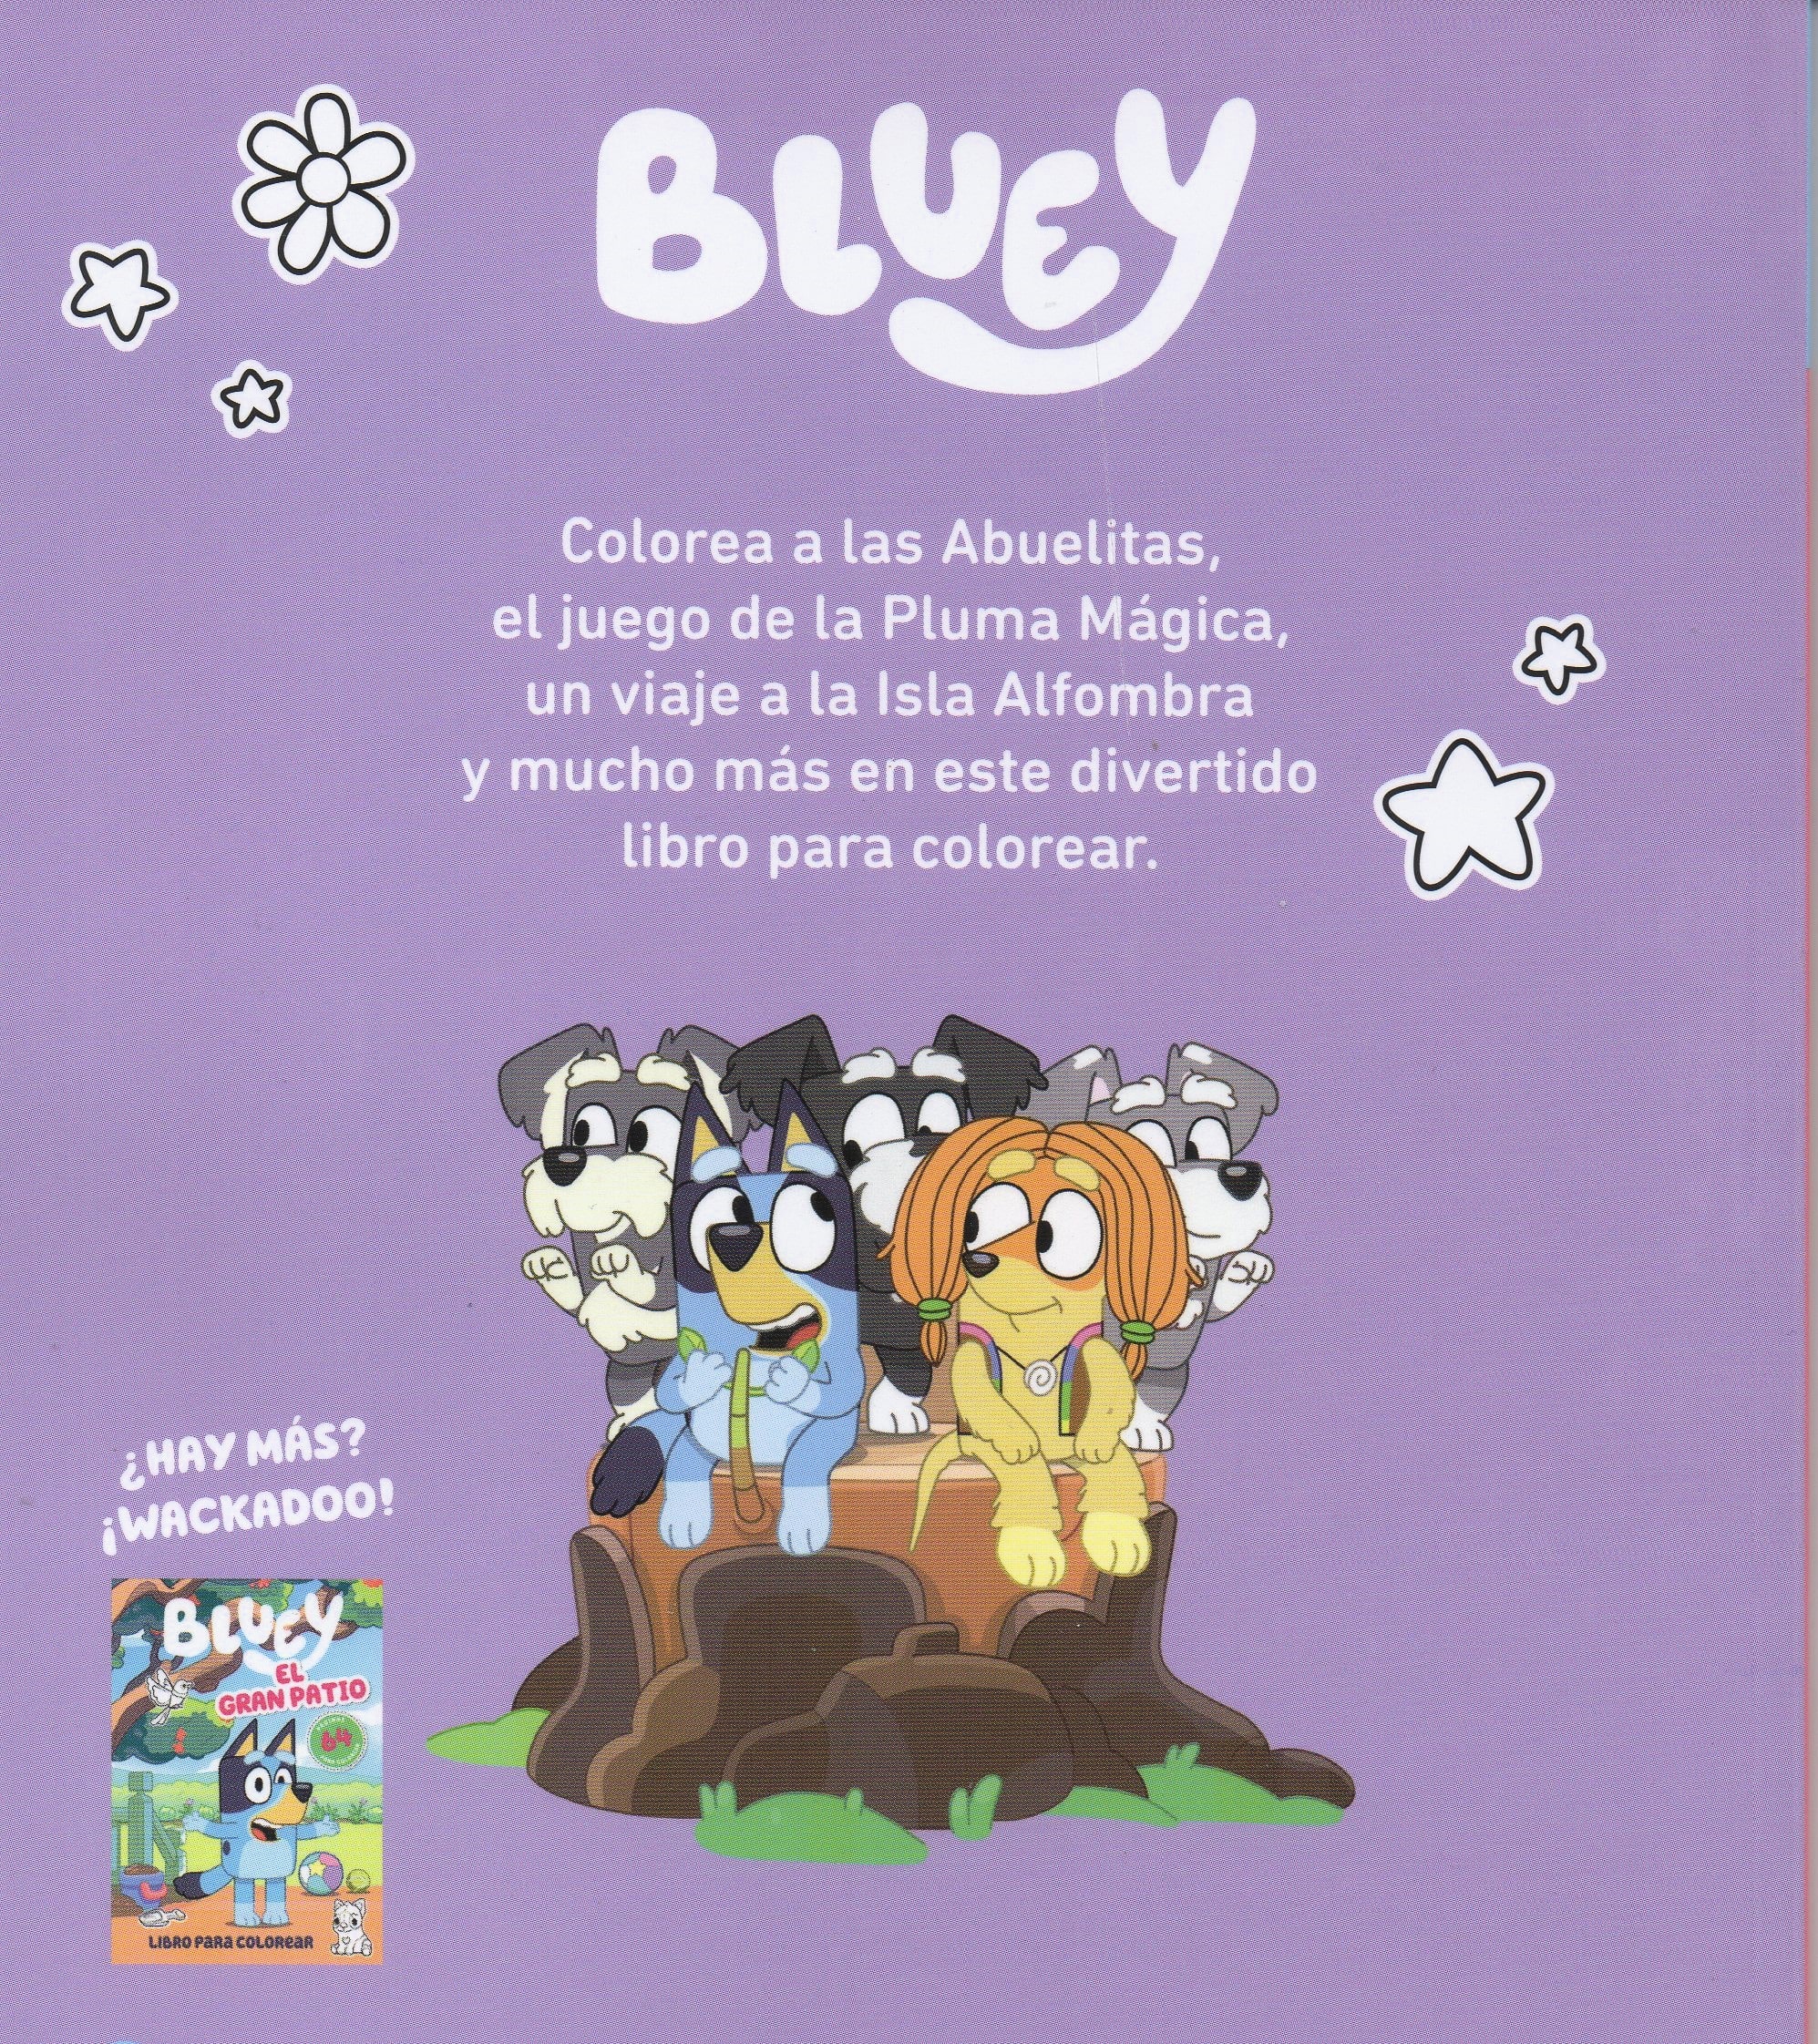 Bluey juegos y diversión libro para colorear CONTRAPORTADA764